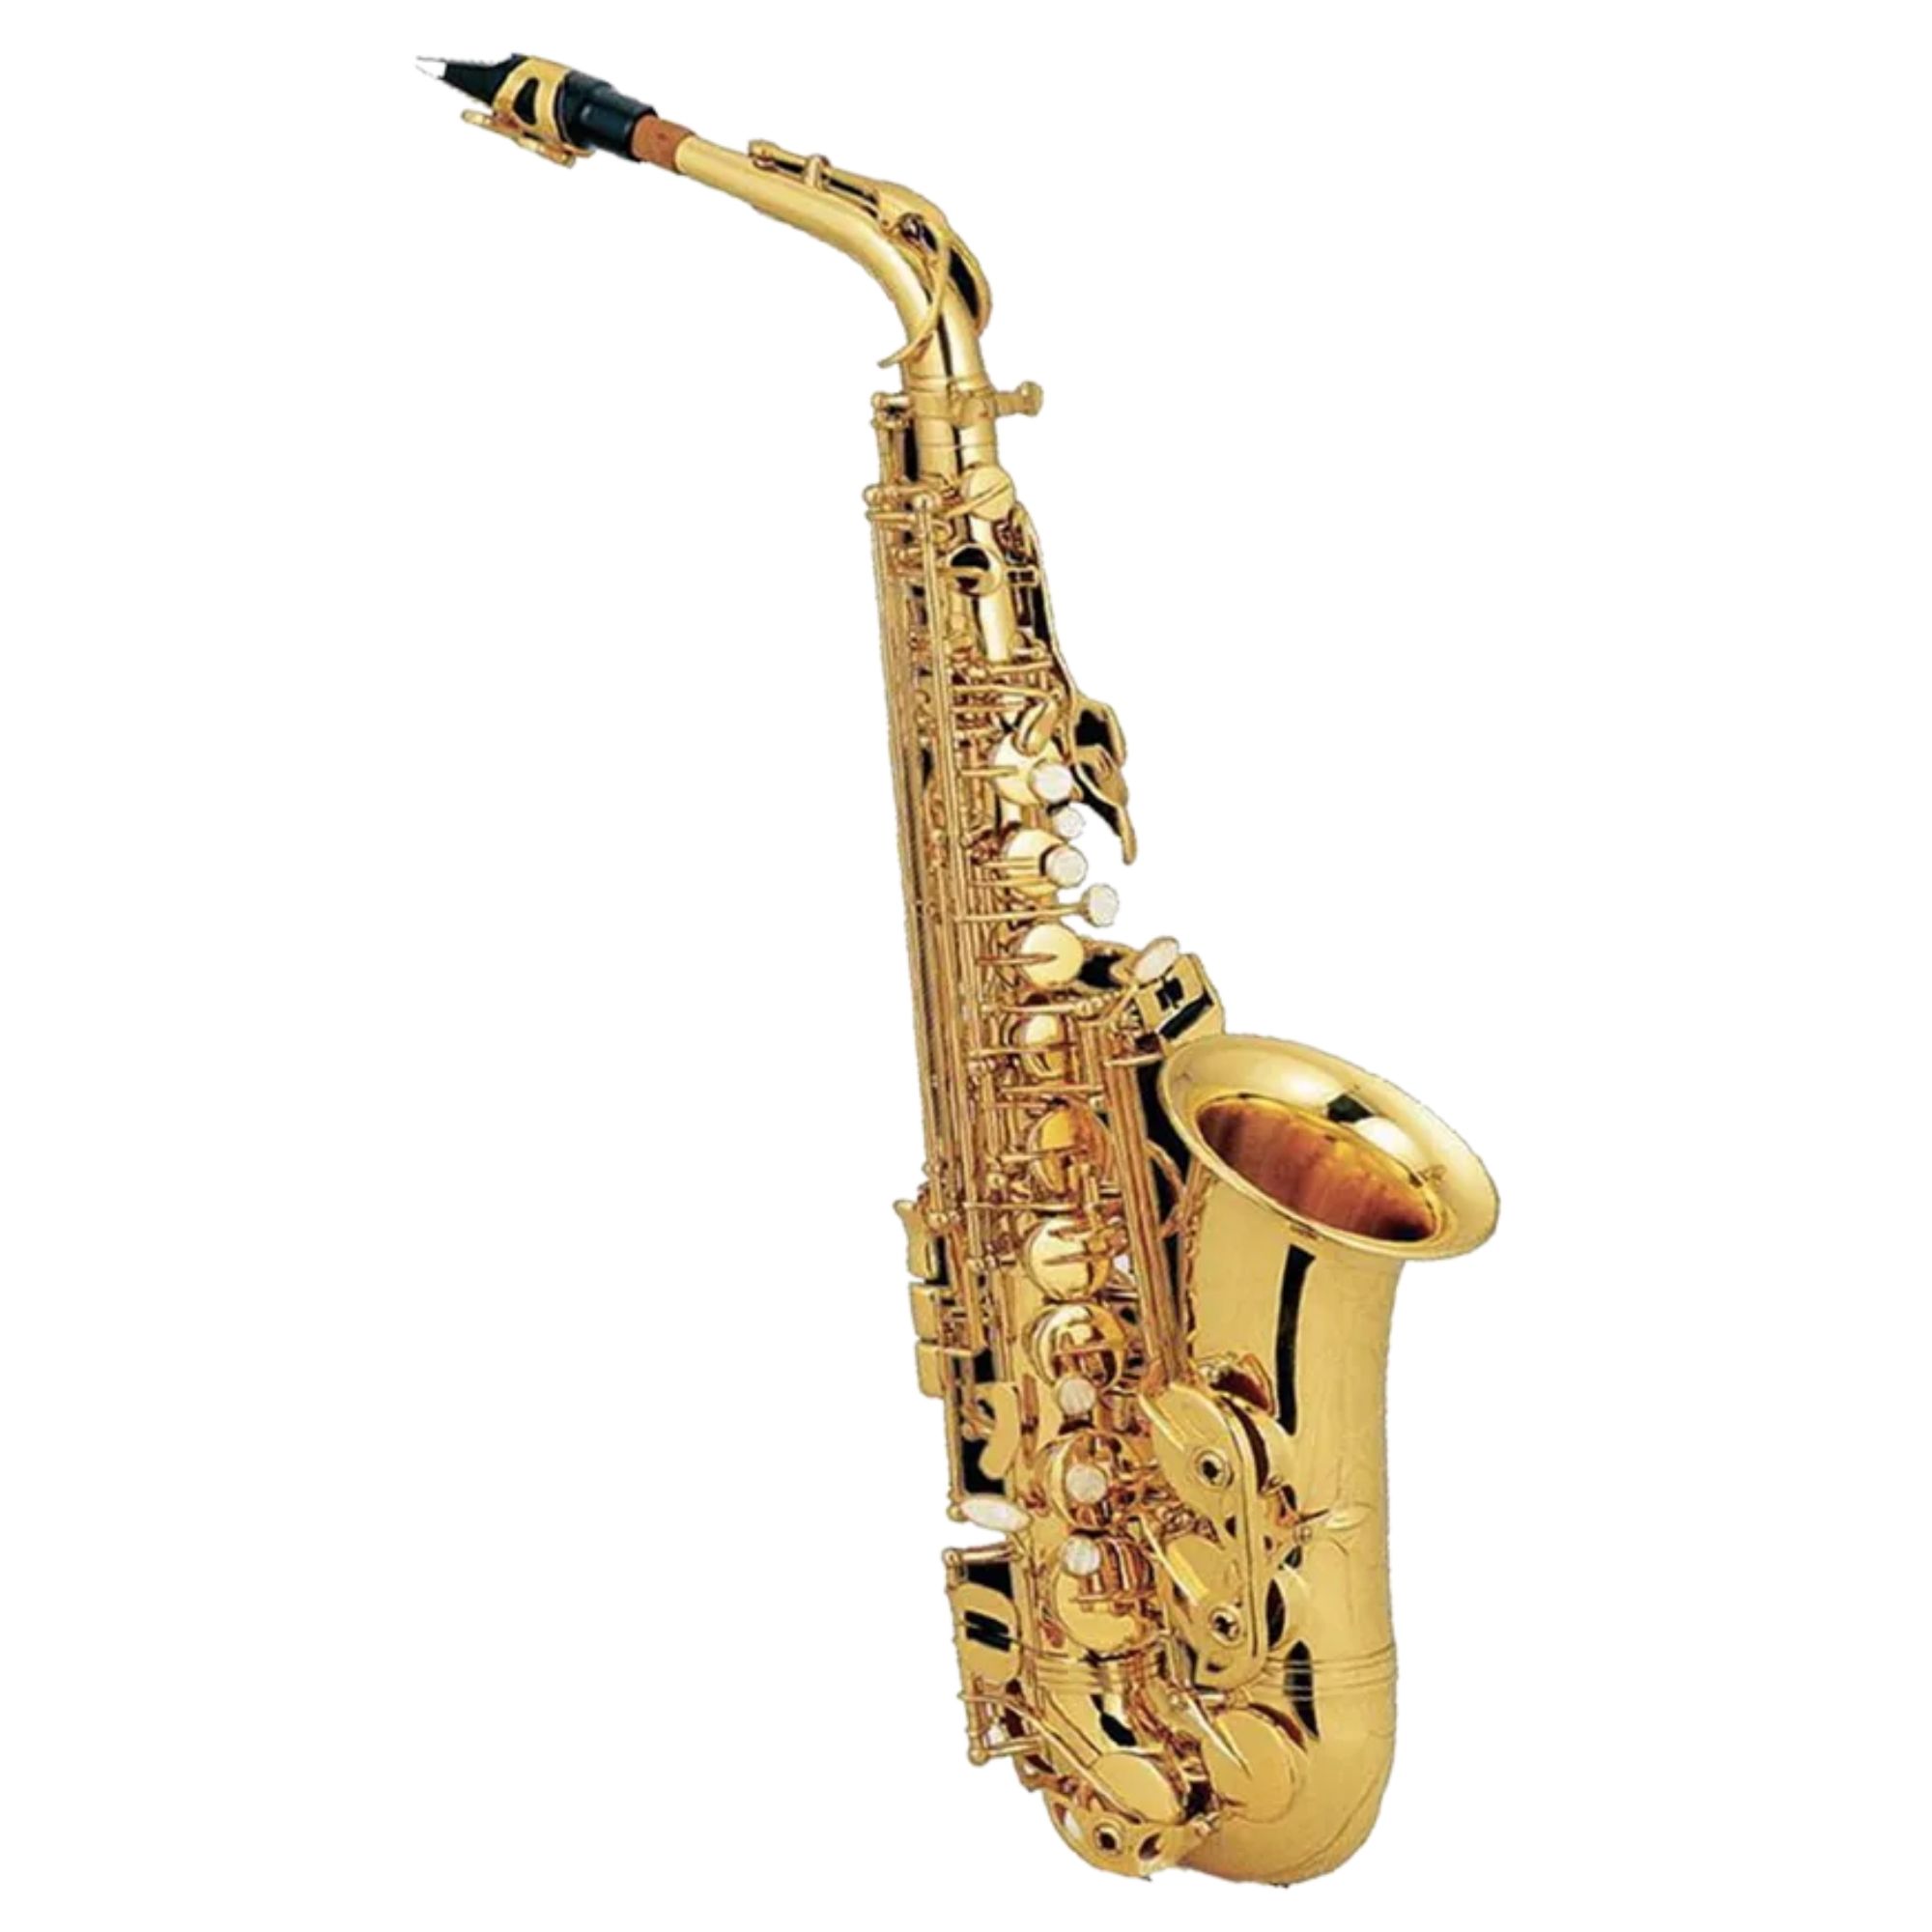 buy jinbao tenor saxophone online in India